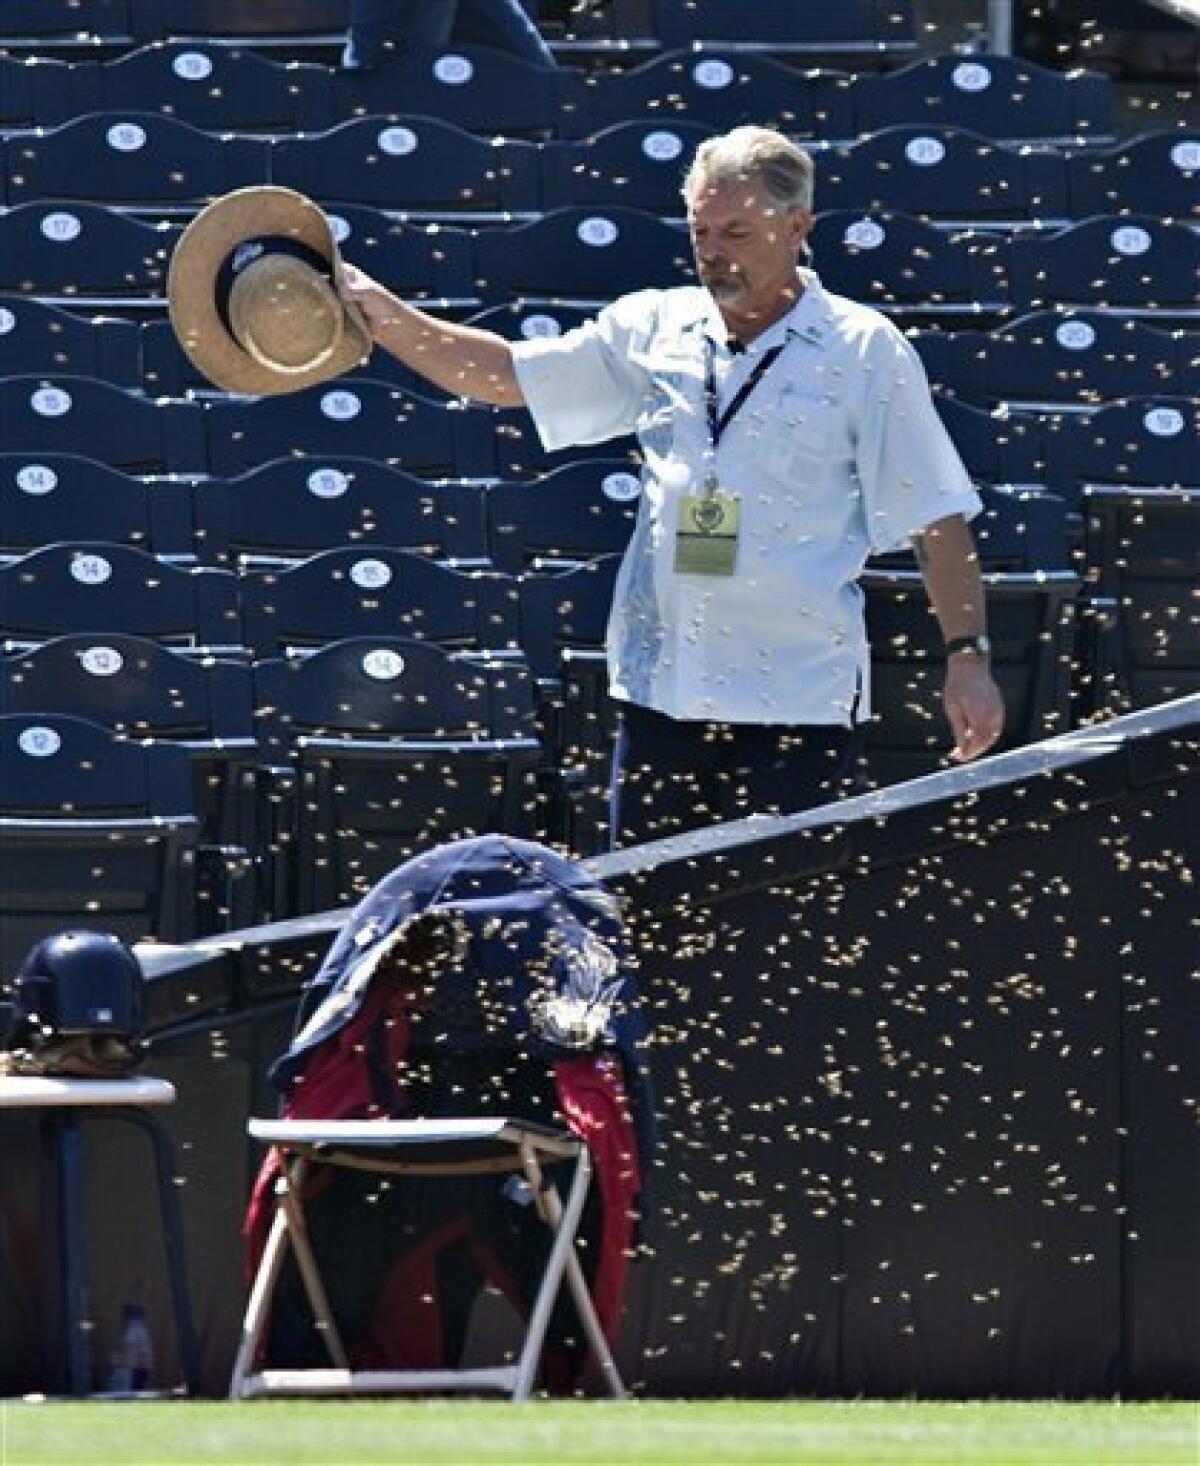 Un-bee-lievable: Bee swarm delays Astros' 7-2 win - The San Diego  Union-Tribune